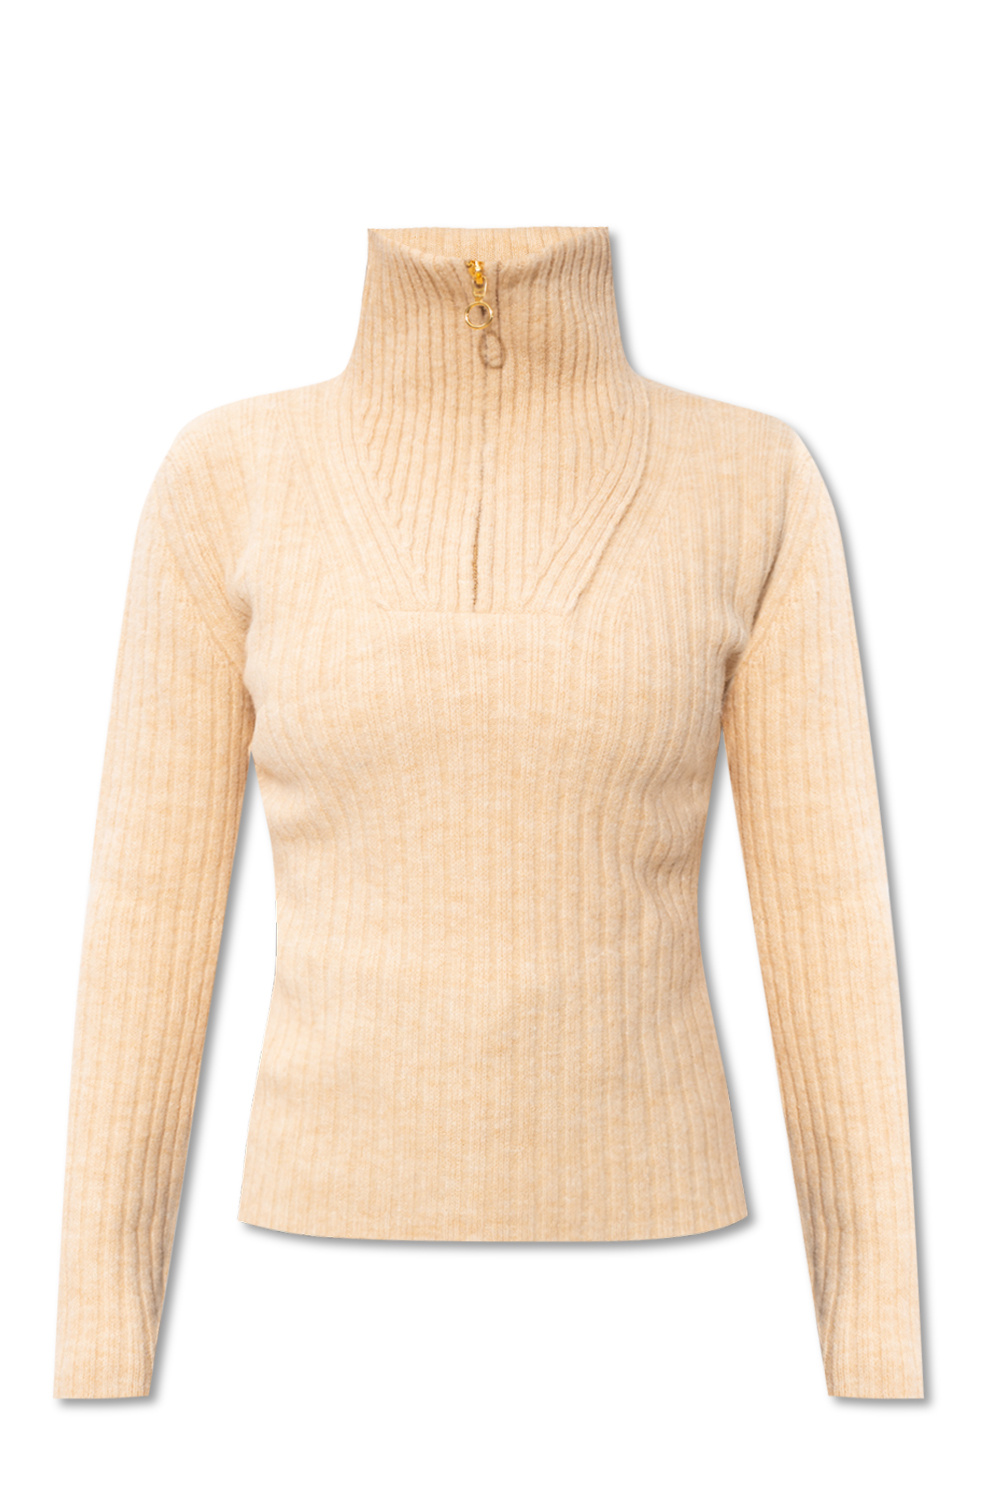 Nanushka Fitted sweater